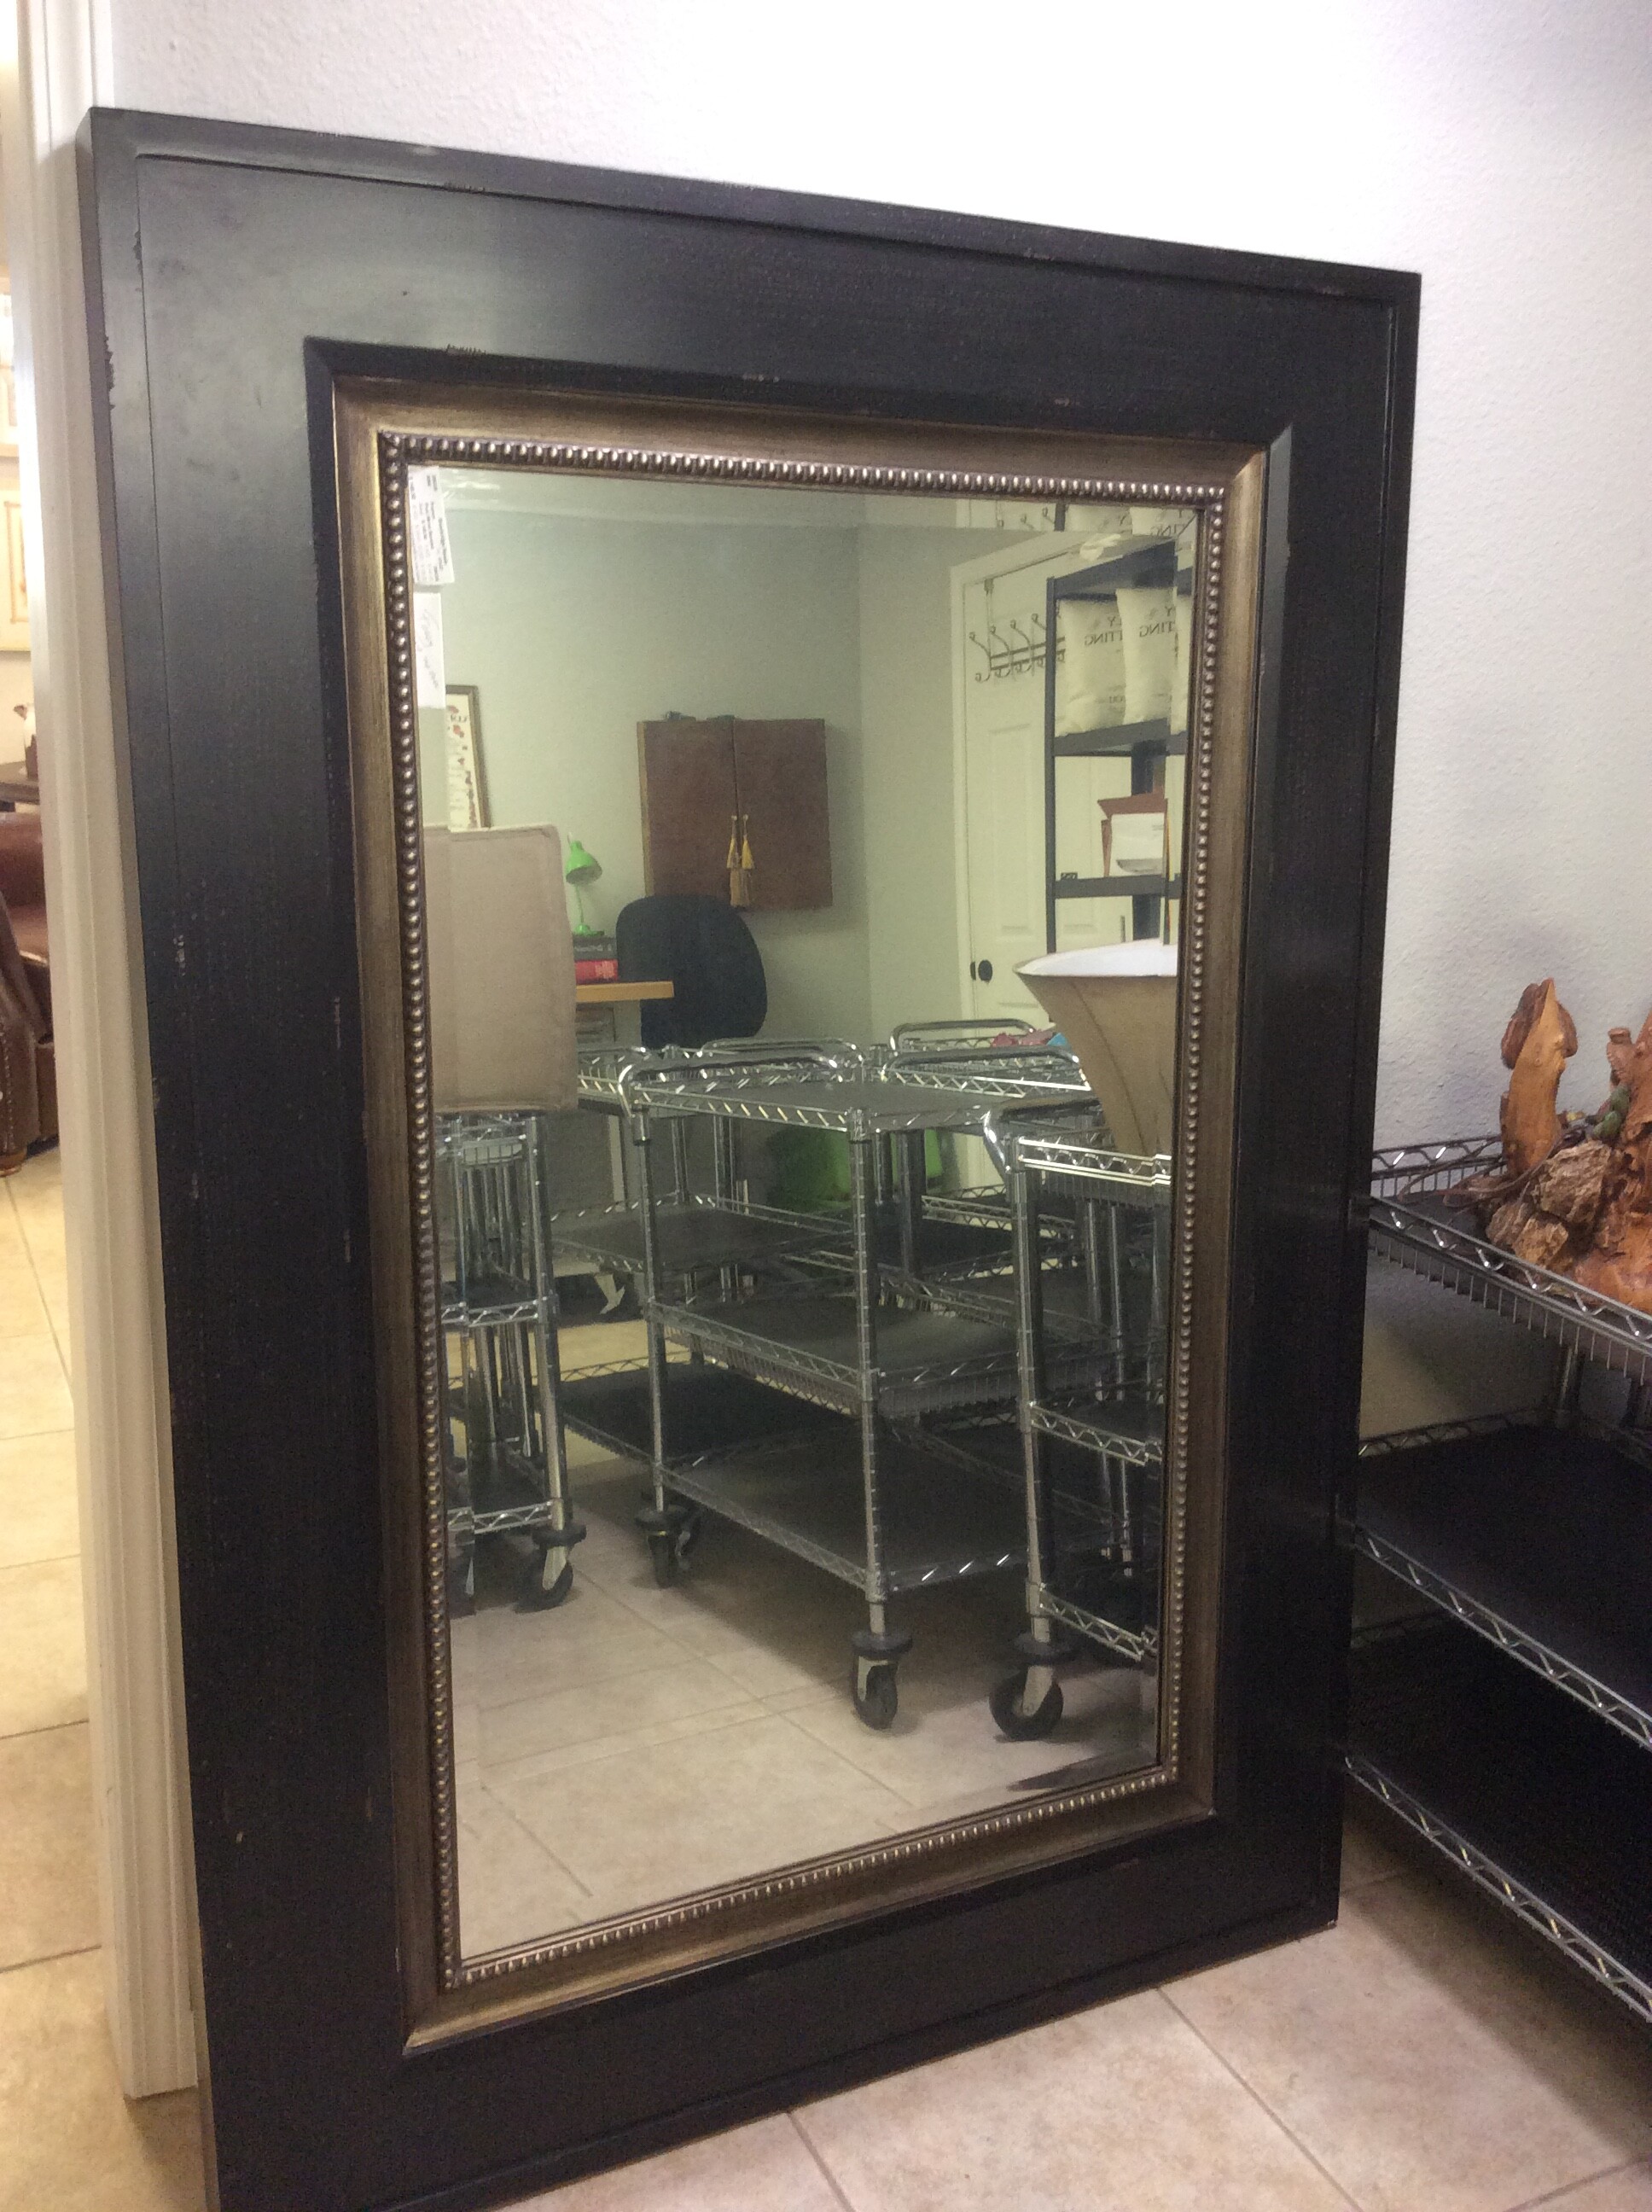 This is a large, dark brown, metal, beveled floor mirror.